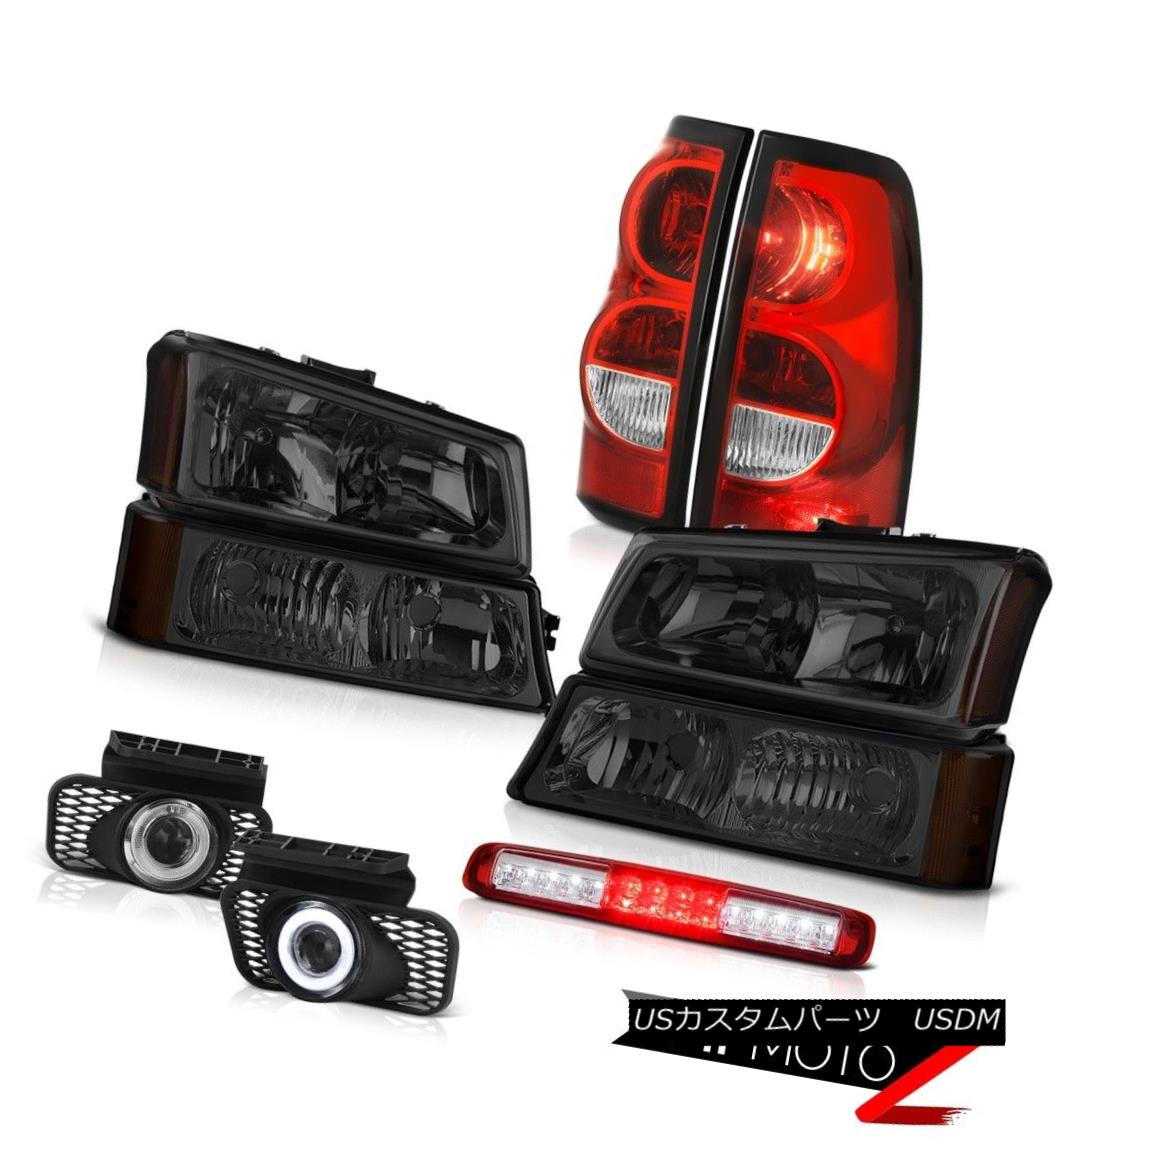 03-06 Silverado Red Third Brake Light Foglights Rear Lamps Signal Lamp Headlampsカテゴリテールライト状態新品メーカーChevrolet車種Silverado 1500発送詳細送料一律 1000円（※北海道、沖縄、離島は省く）商品詳細輸入商品の為、英語表記となります。 Condition: New Brand: Venom Inc. [Fog Light] Switch: [Fog Light] Switch Manufacturer Part Number: OEM#A7703H_2003_2004_2005_2006_A35131 [Fog Light] Bulbs: [Fog Light] Bulbs Interchange Part Number: 15199557/15199556/19169005/19169004/15190982 [Headlight] Side: Driver&Passenger Side Provided Other Part Number: GM2502257/GM2503257,GM2801174/GM2800174,GM2592127 [Tail Light] Brake: PY27 Bulbs Included Placement on Vehicle: Left, Right, Front, Rear [Tail Light] Dashboard Light: Error-Free Warranty: 60 Day [Tail Light] Parking: PY27 Bulbs Included Fitment Type: Direct Replacement [Tail Light] Reverse: PY27 Bulbs Included Lens Color: Smoke, Red, Clear [Tail Light] Side: Driver & Passenger Included Housing Color: Chrome [Tail Light] Signal: PY27 Bulbs Included [Headlight] Low Beam Bulb: Re-use Original 9006 Bulbs Contact Us: TEL: 1-844-884-7847 | HOURS: 9am - 6pm PST [Headlight] High Beam Bulb: Re-use Original 9005 Bulbs Returns: 60-Days LOVE IT or RETURN IT! [Fog Light] Wiring: [Fog Light] Wiring※以下の注意事項をご理解頂いた上で、ご入札下さい※■海外輸入品の為、NC,NRでお願い致します。■フィッテングや車検対応の有無については、画像と説明文よりお客様の方にてご判断をお願いしております。■USのカスタムパーツは国内の純正パーツを取り外した後、接続コネクタが必ずしも一致するとは限らず、加工が必要な場合がございます。■商品説明文中に英語にて”保障”に関する記載があっても適応はされませんので、ご理解ください。■初期不良（到着より7日以内）のみ保証対象とします。ただし、取り付け後は、保証対象外とします。■海外倉庫から到着した製品を、再度国内で検品を行い、日本郵便または佐川急便にて発送となります。■お届けまでには、2〜3週間程頂いております。ただし、天候次第で多少遅れが発生する場合もあります。■商品落札後のお客様のご都合によるキャンセルはお断りしておりますが、商品落札金額の30％の手数料をいただいた場合のみお受けいたします。■他にもUSパーツを多数出品させて頂いておりますので、ご覧頂けたらと思います。■USパーツの輸入代行も行っておりますので、ショップに掲載されていない商品でもお探しする事が可能です!!お気軽にお問い合わせ下さい。&nbsp;